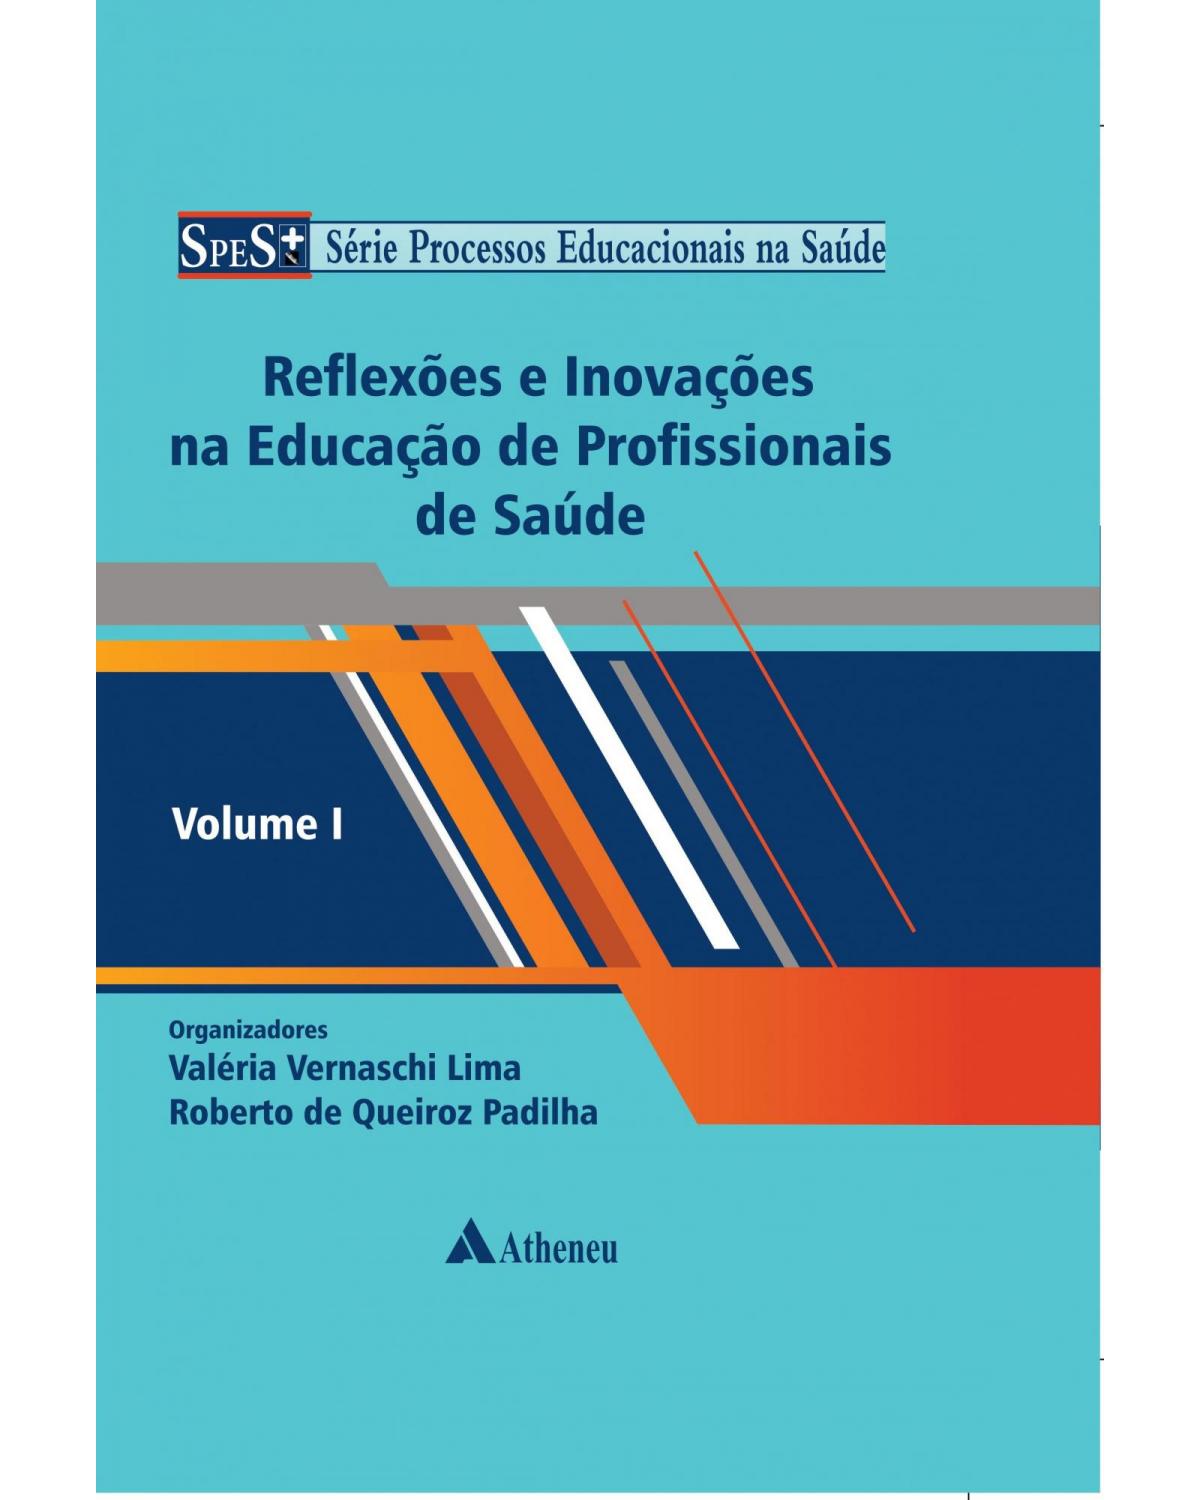 Reflexões e inovações na educação de profissionais de saúde - Volume 1:  - 1ª Edição | 2017